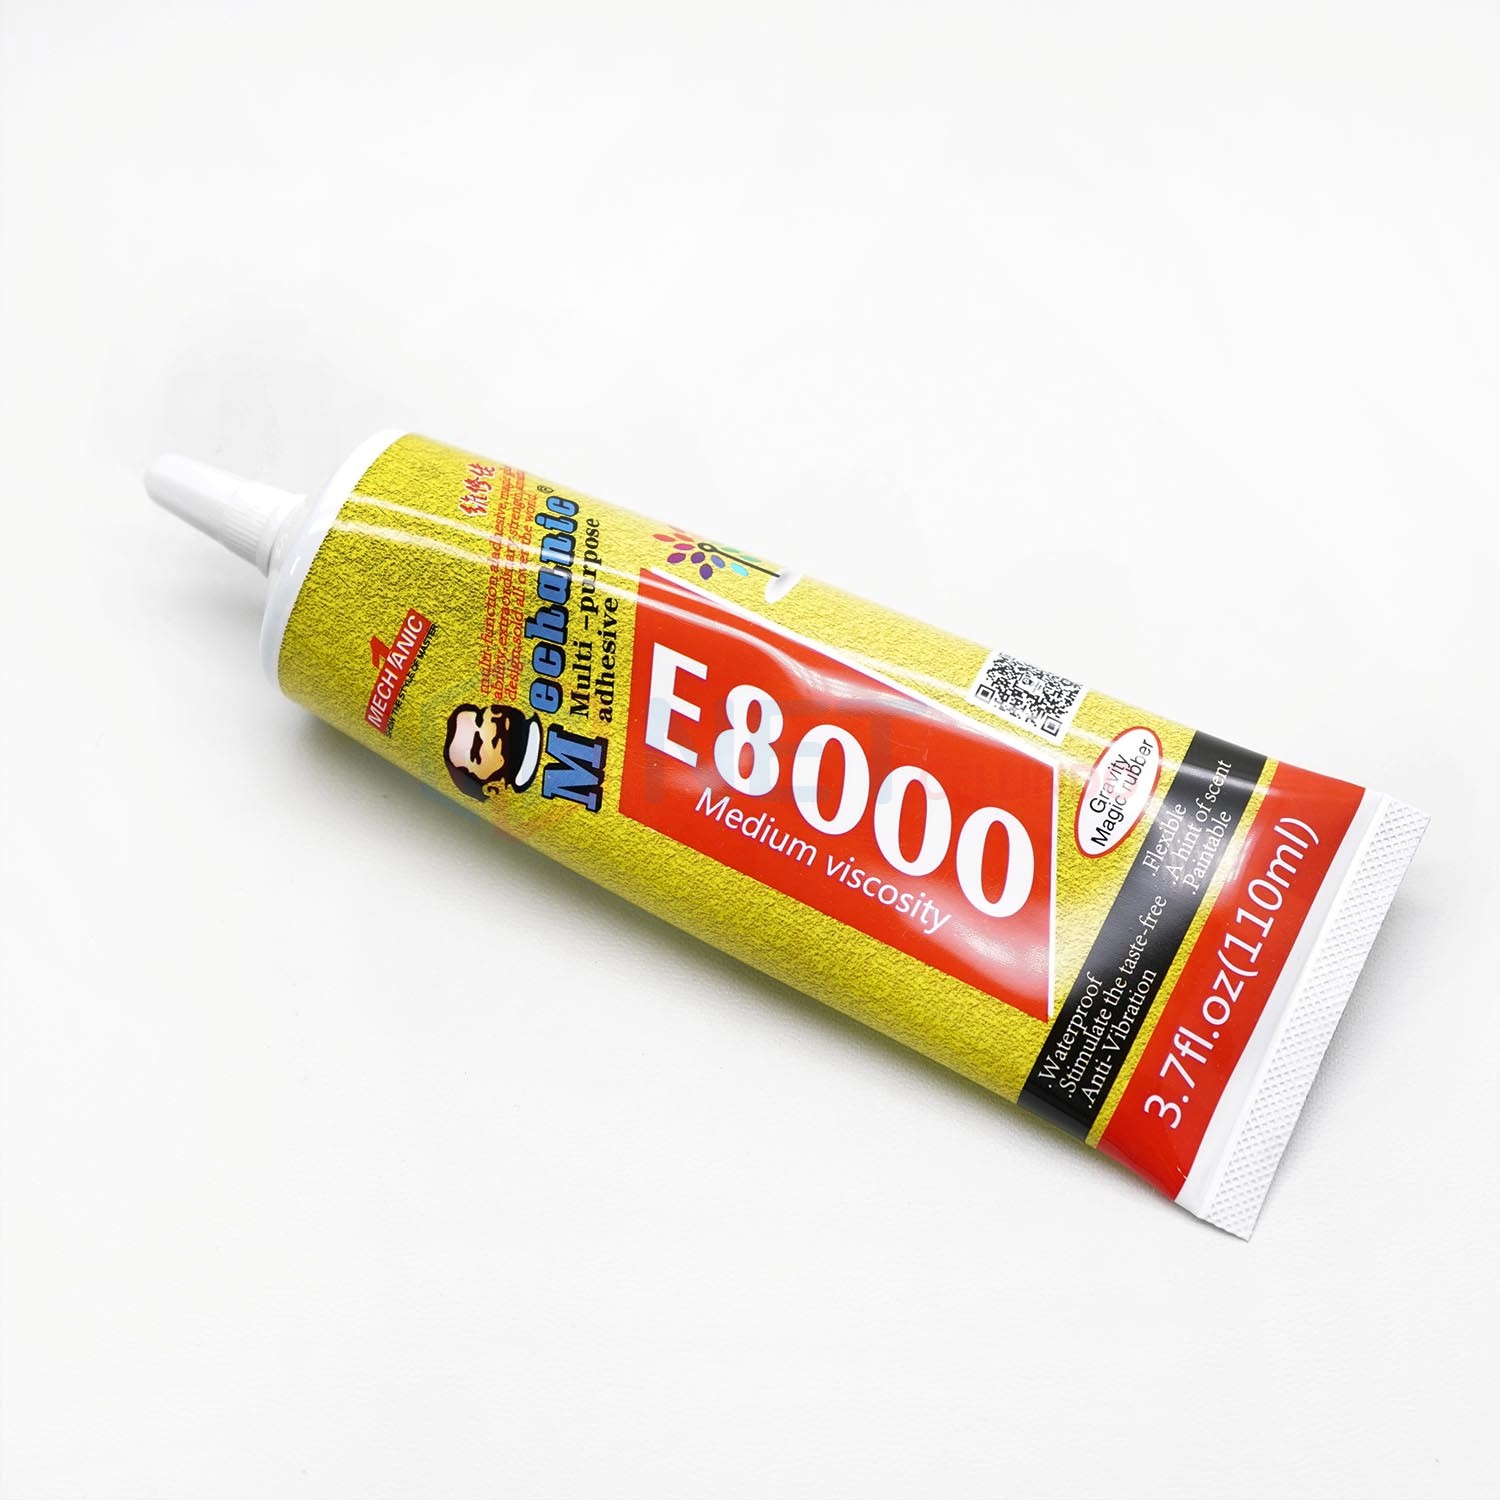 Mechanic E8000 Multipurpose Adhesive